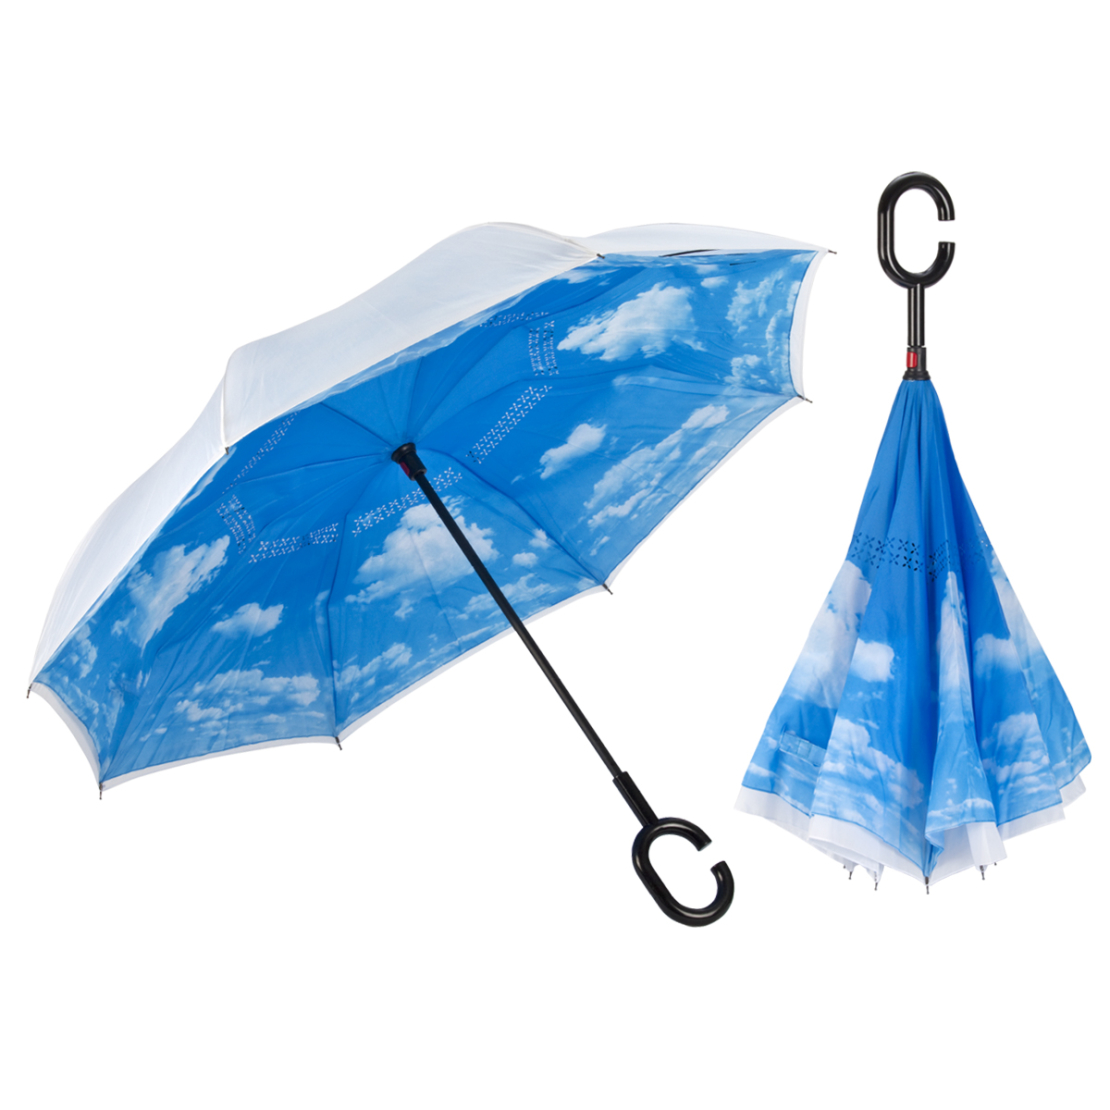 מטריה הפוכה – שמיים